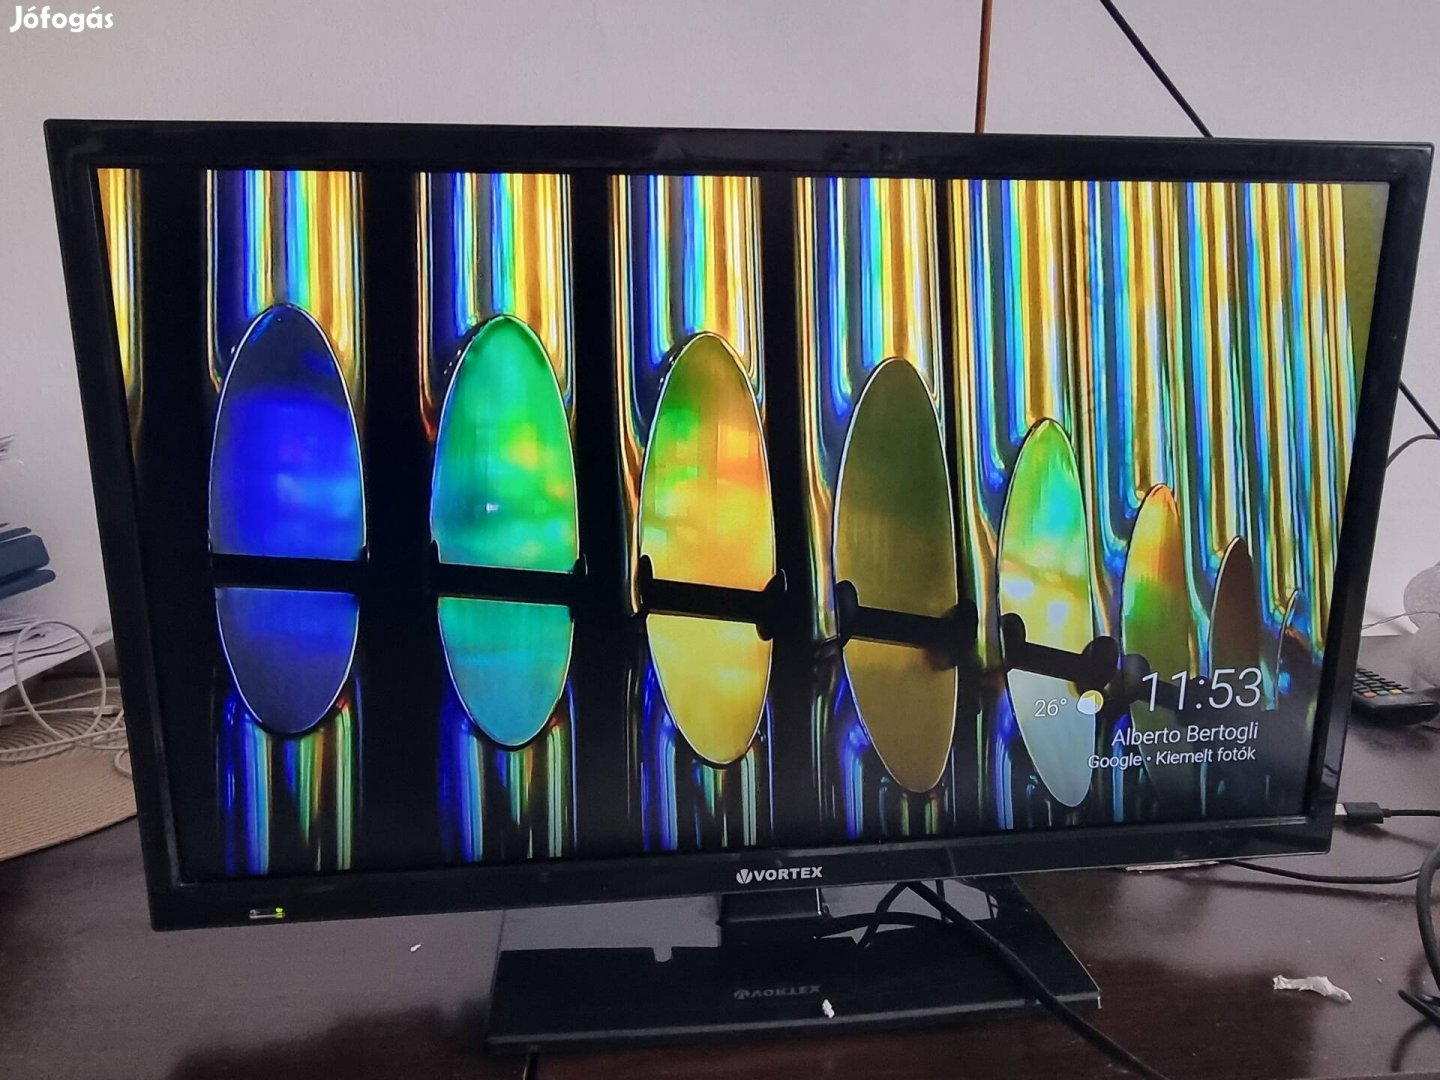 Vortex tv monitor 24" használt 